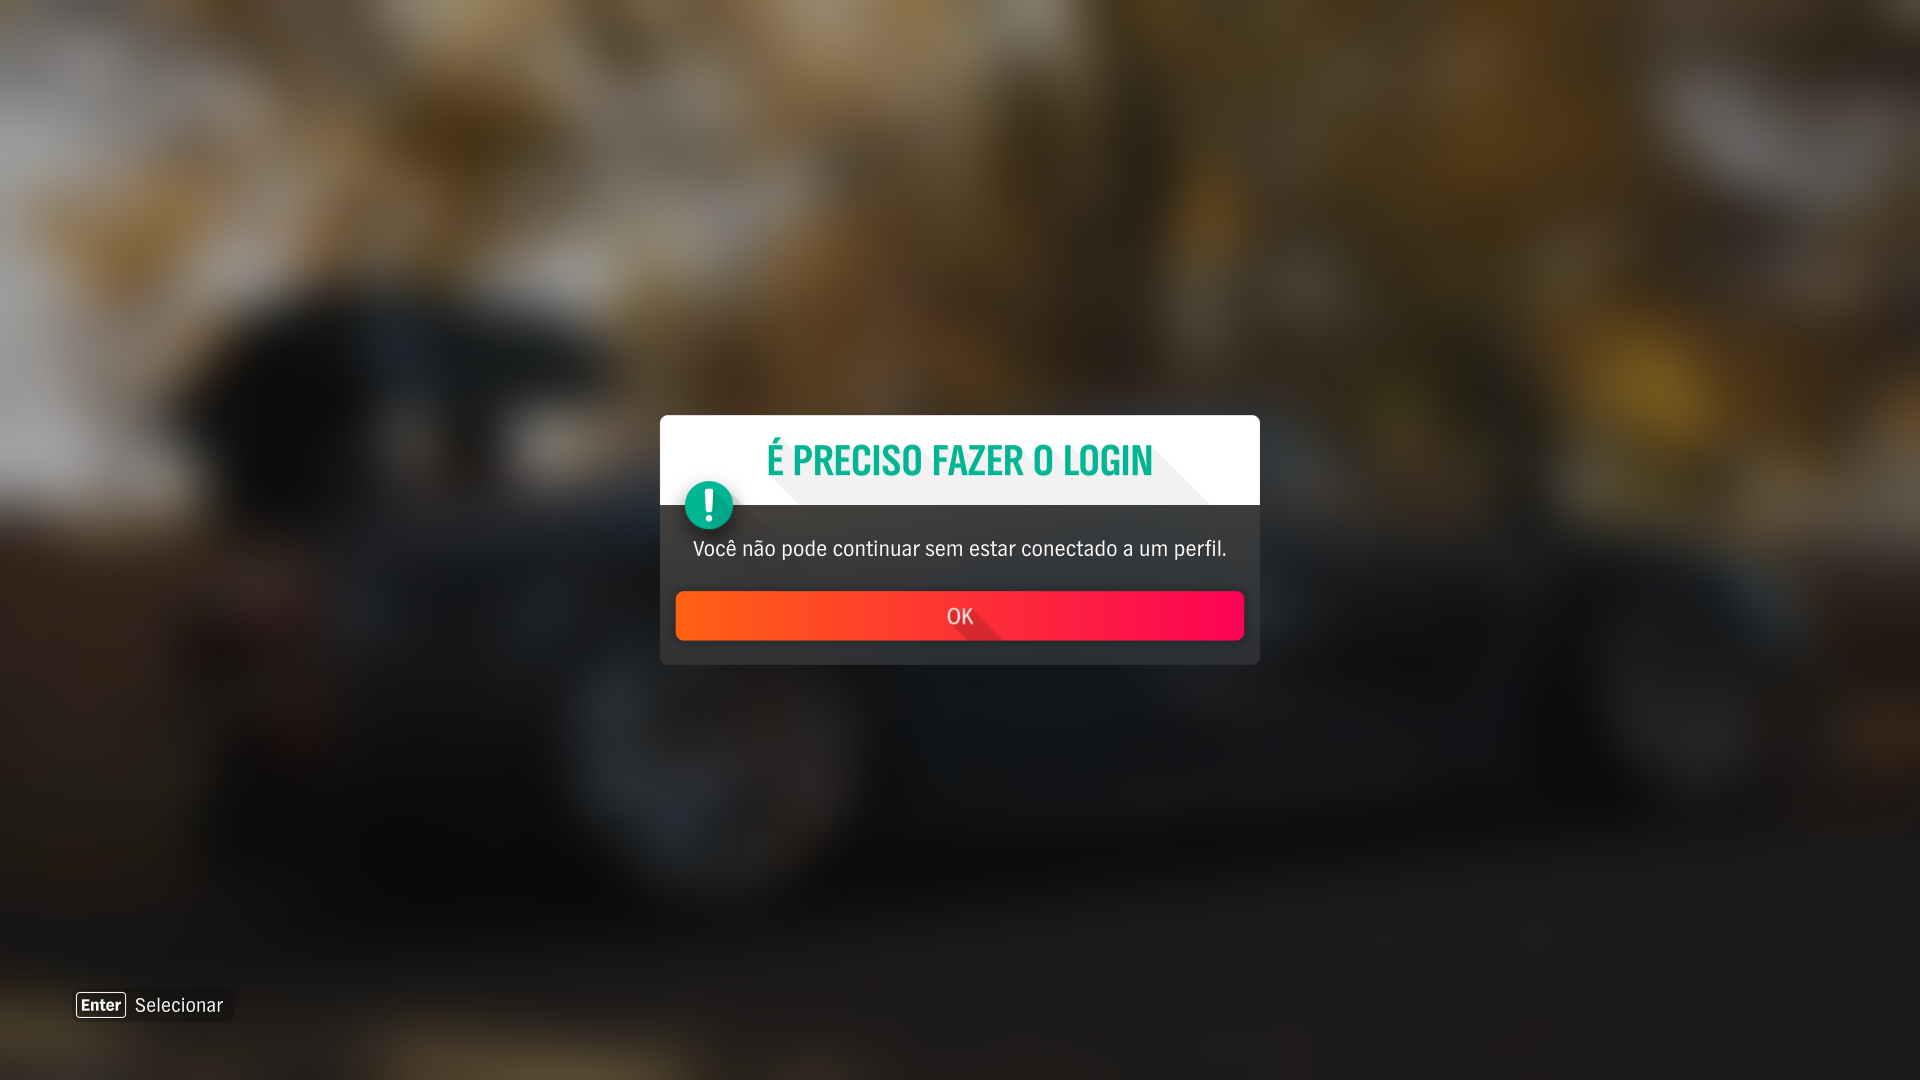 Carro de Forza Horizon 4 não aparece - Microsoft Community